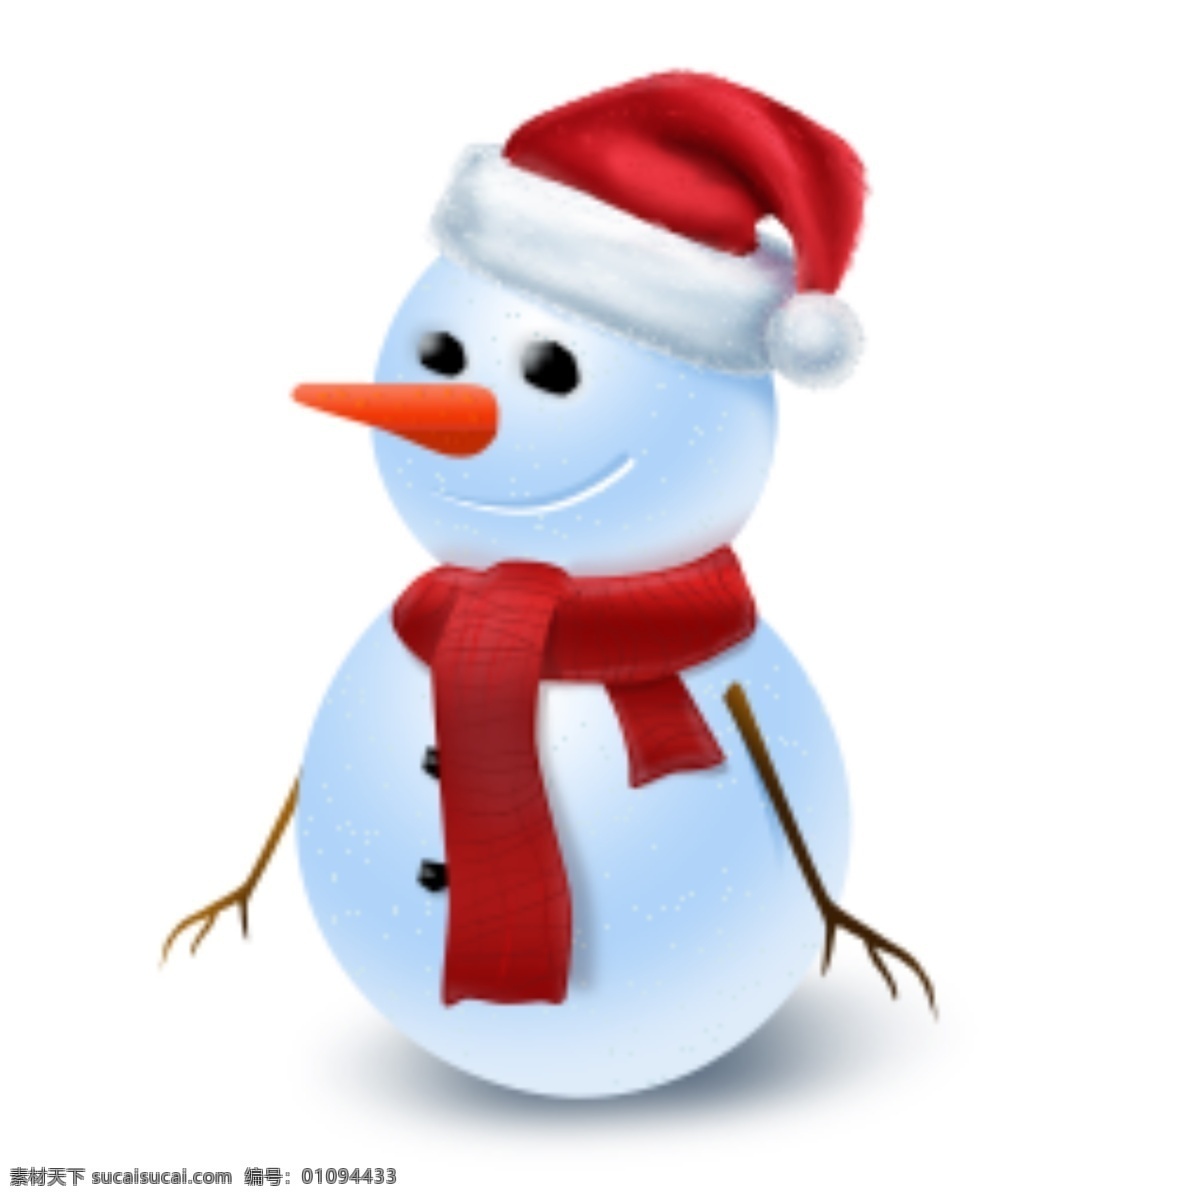 网页 圣诞节 雪人 icon 图标 图标设计 icon设计 icon图标 网页图标 圣诞节图标 雪人图标设计 雪人图标 雪人icon